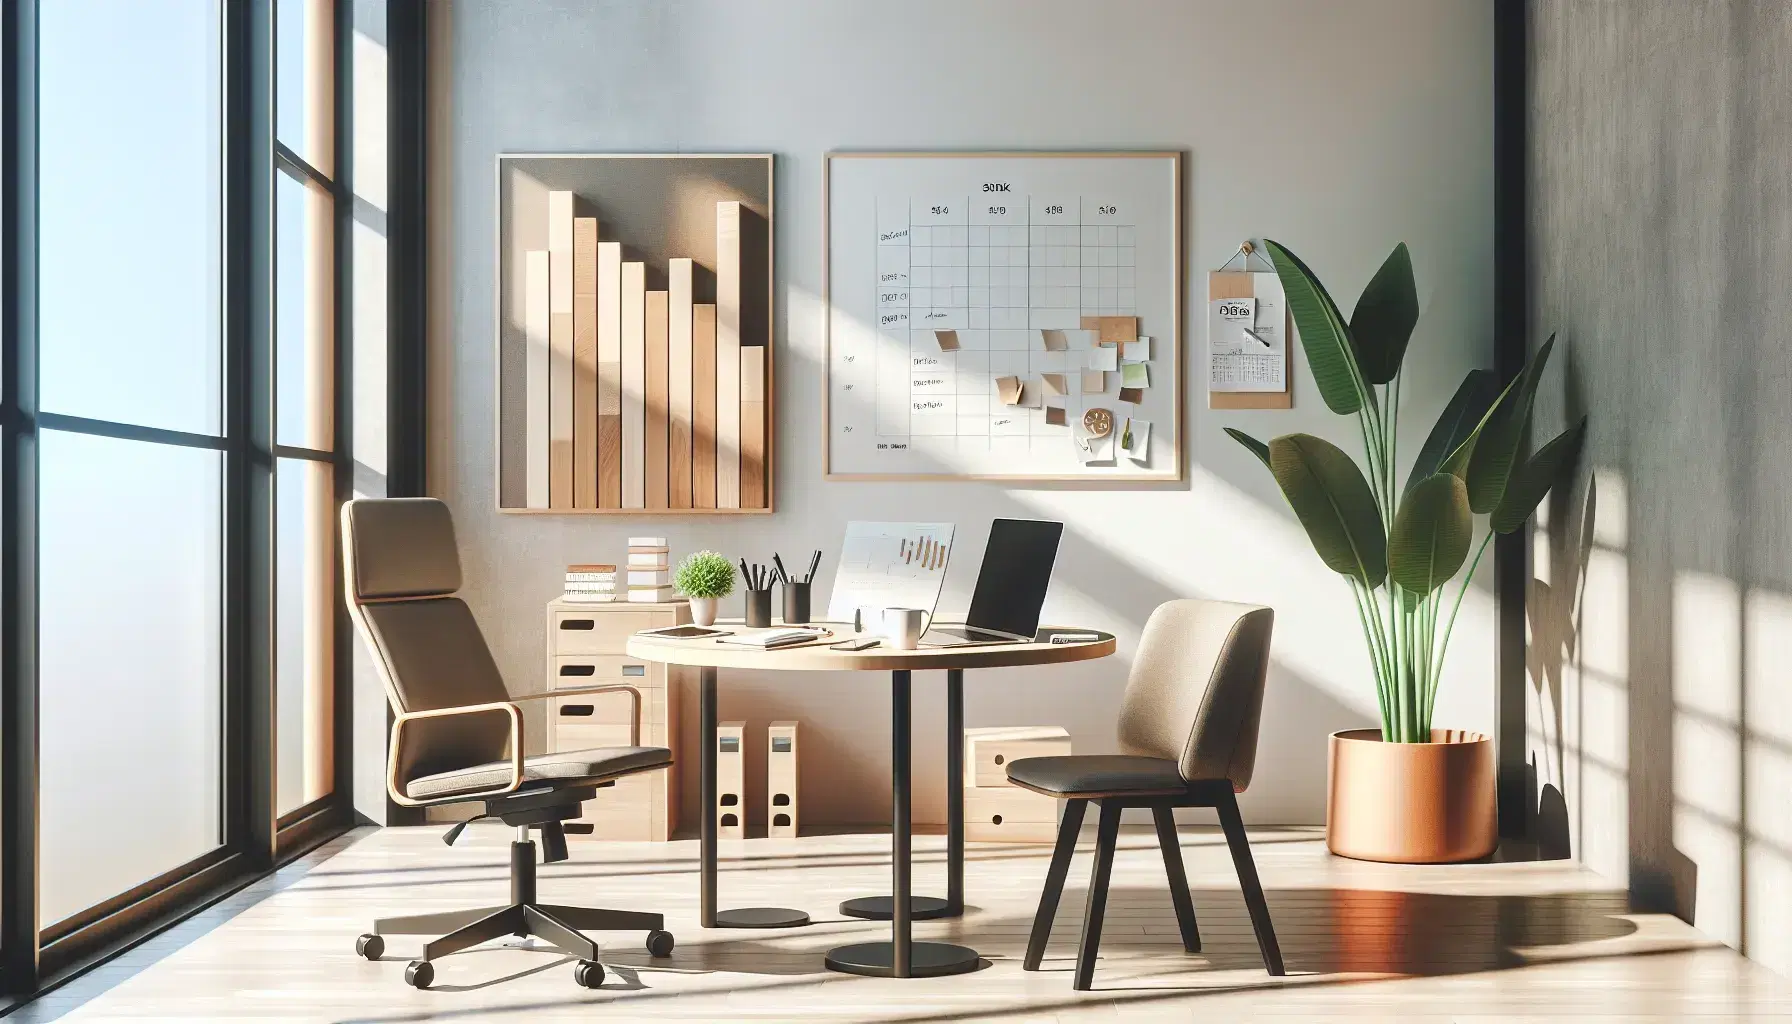 Oficina moderna y luminosa con mesa redonda, silla ergonómica, portátil, bloc de notas, smartphone y gráfico de barras 3D de madera junto a pizarra blanca y planta verde.